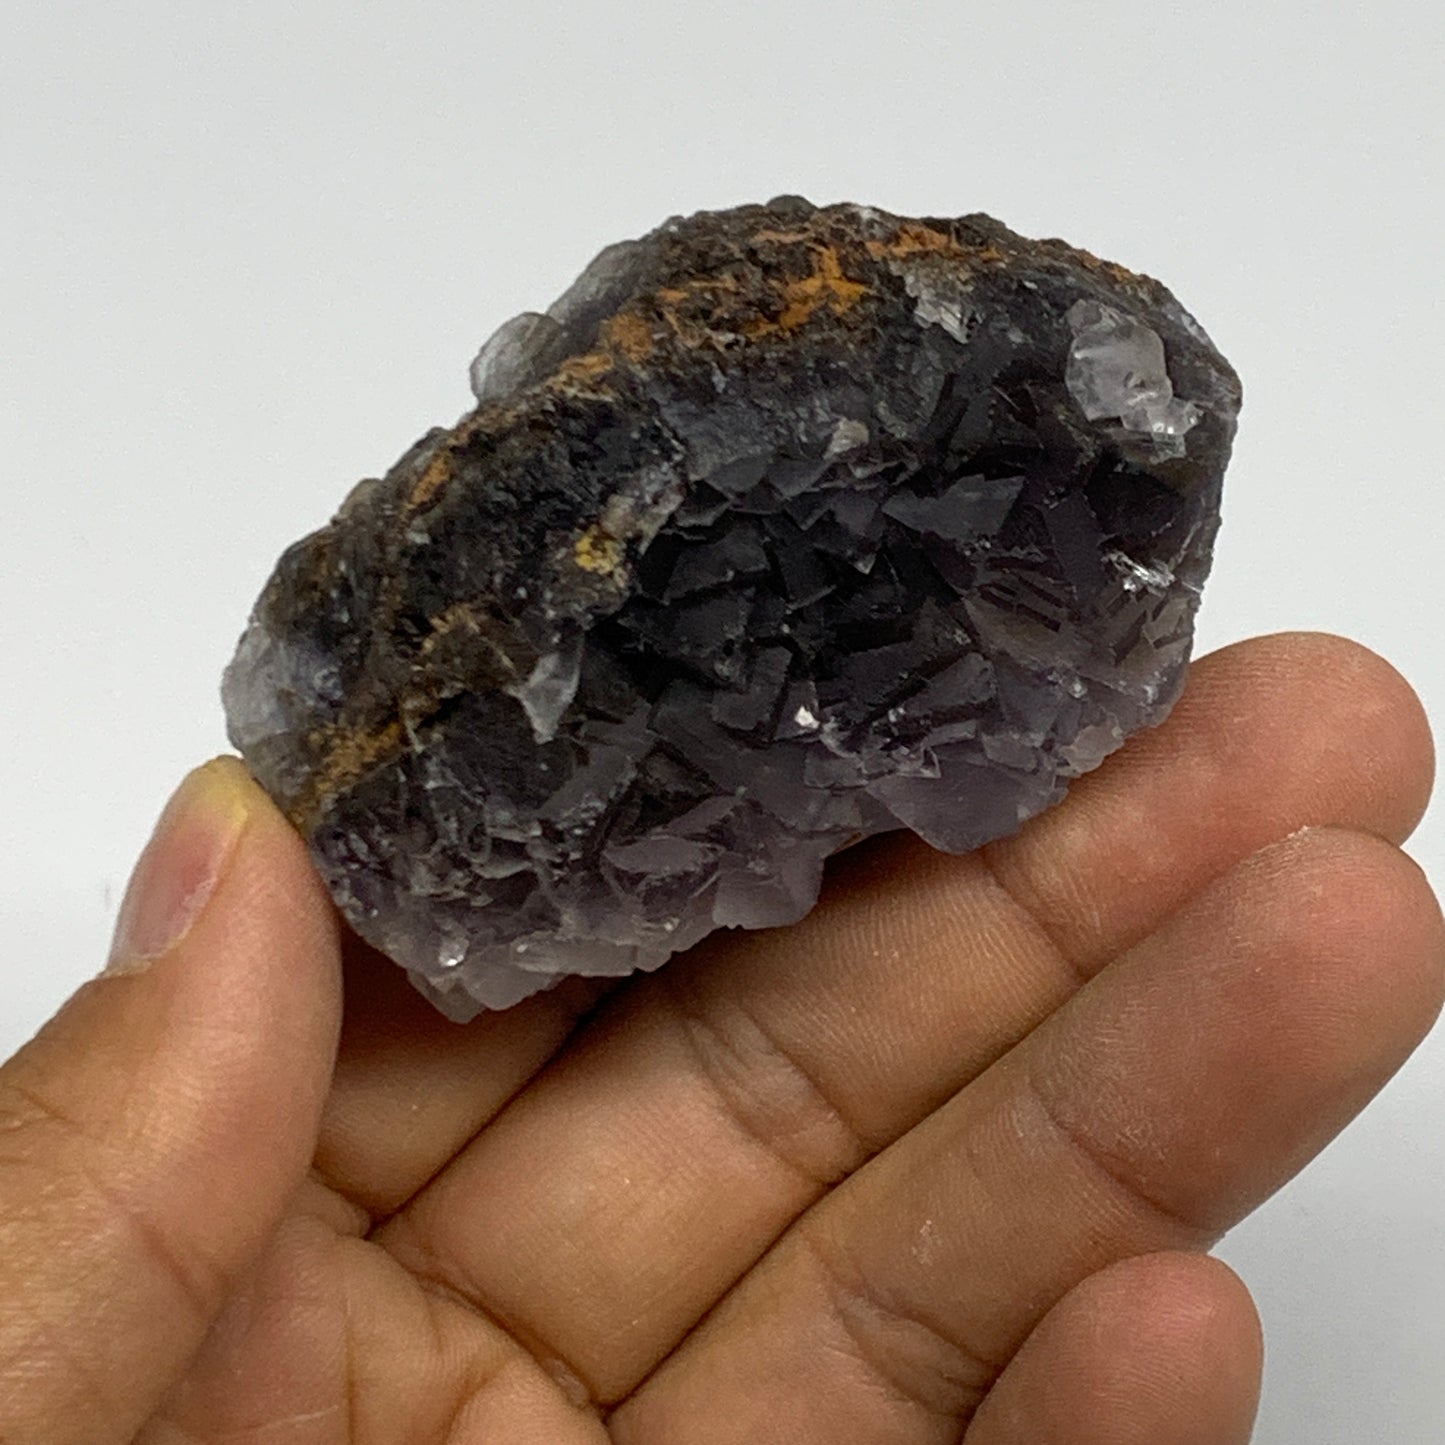 100.4g,2.3"x1.5"x1.4.",Blue Fluorite Crystal Mineral Specimen @Pakistan,B27717